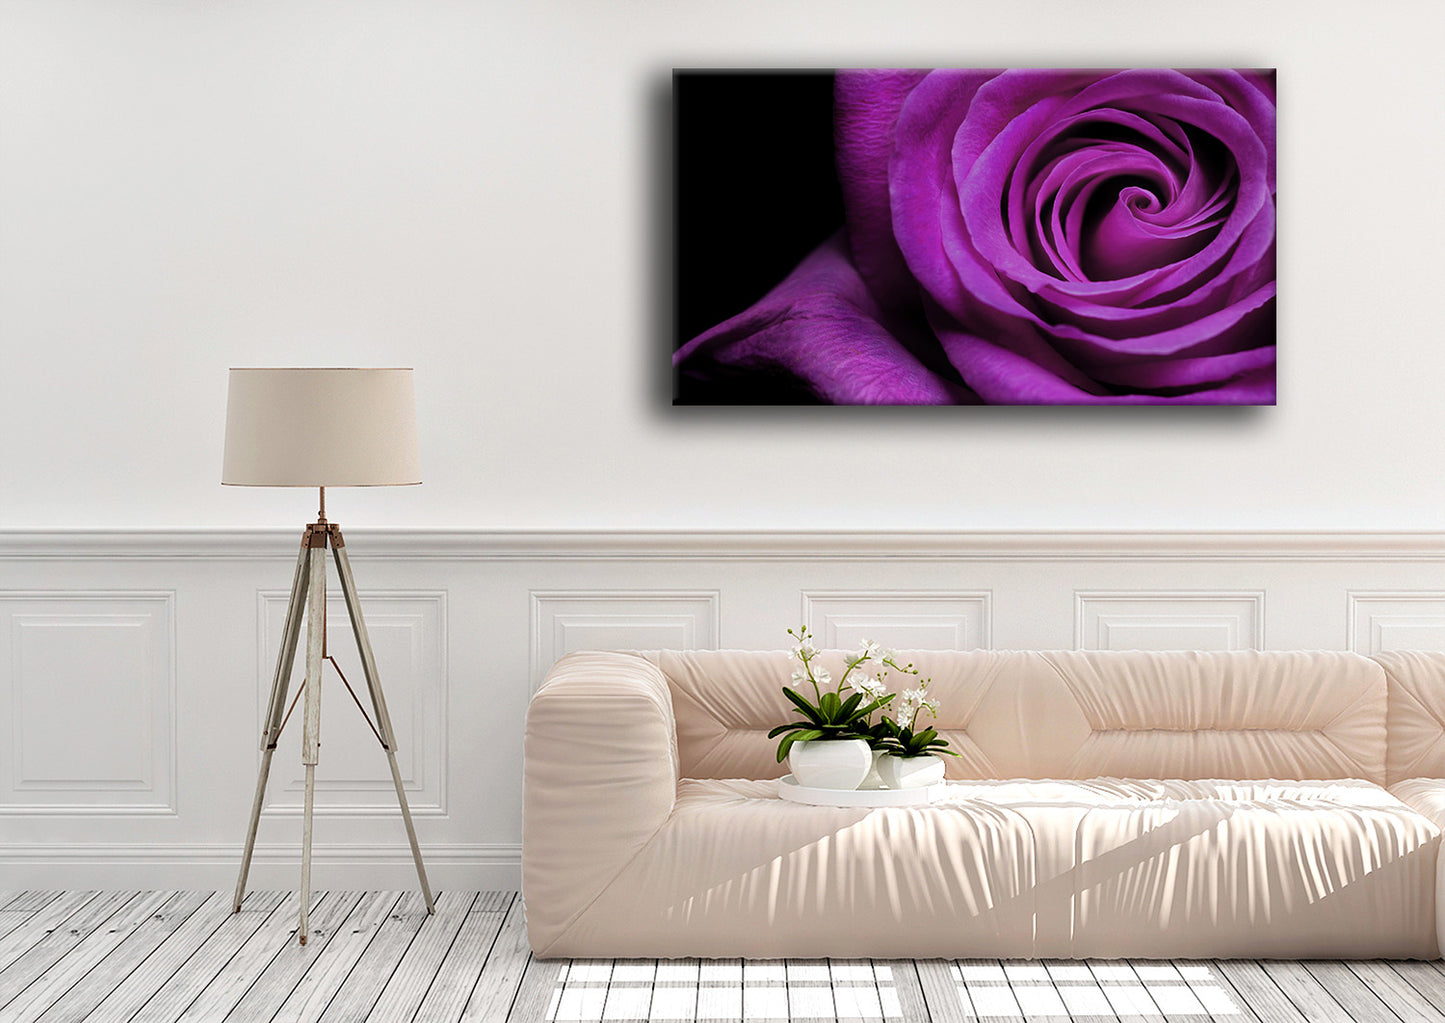 A single purple rose